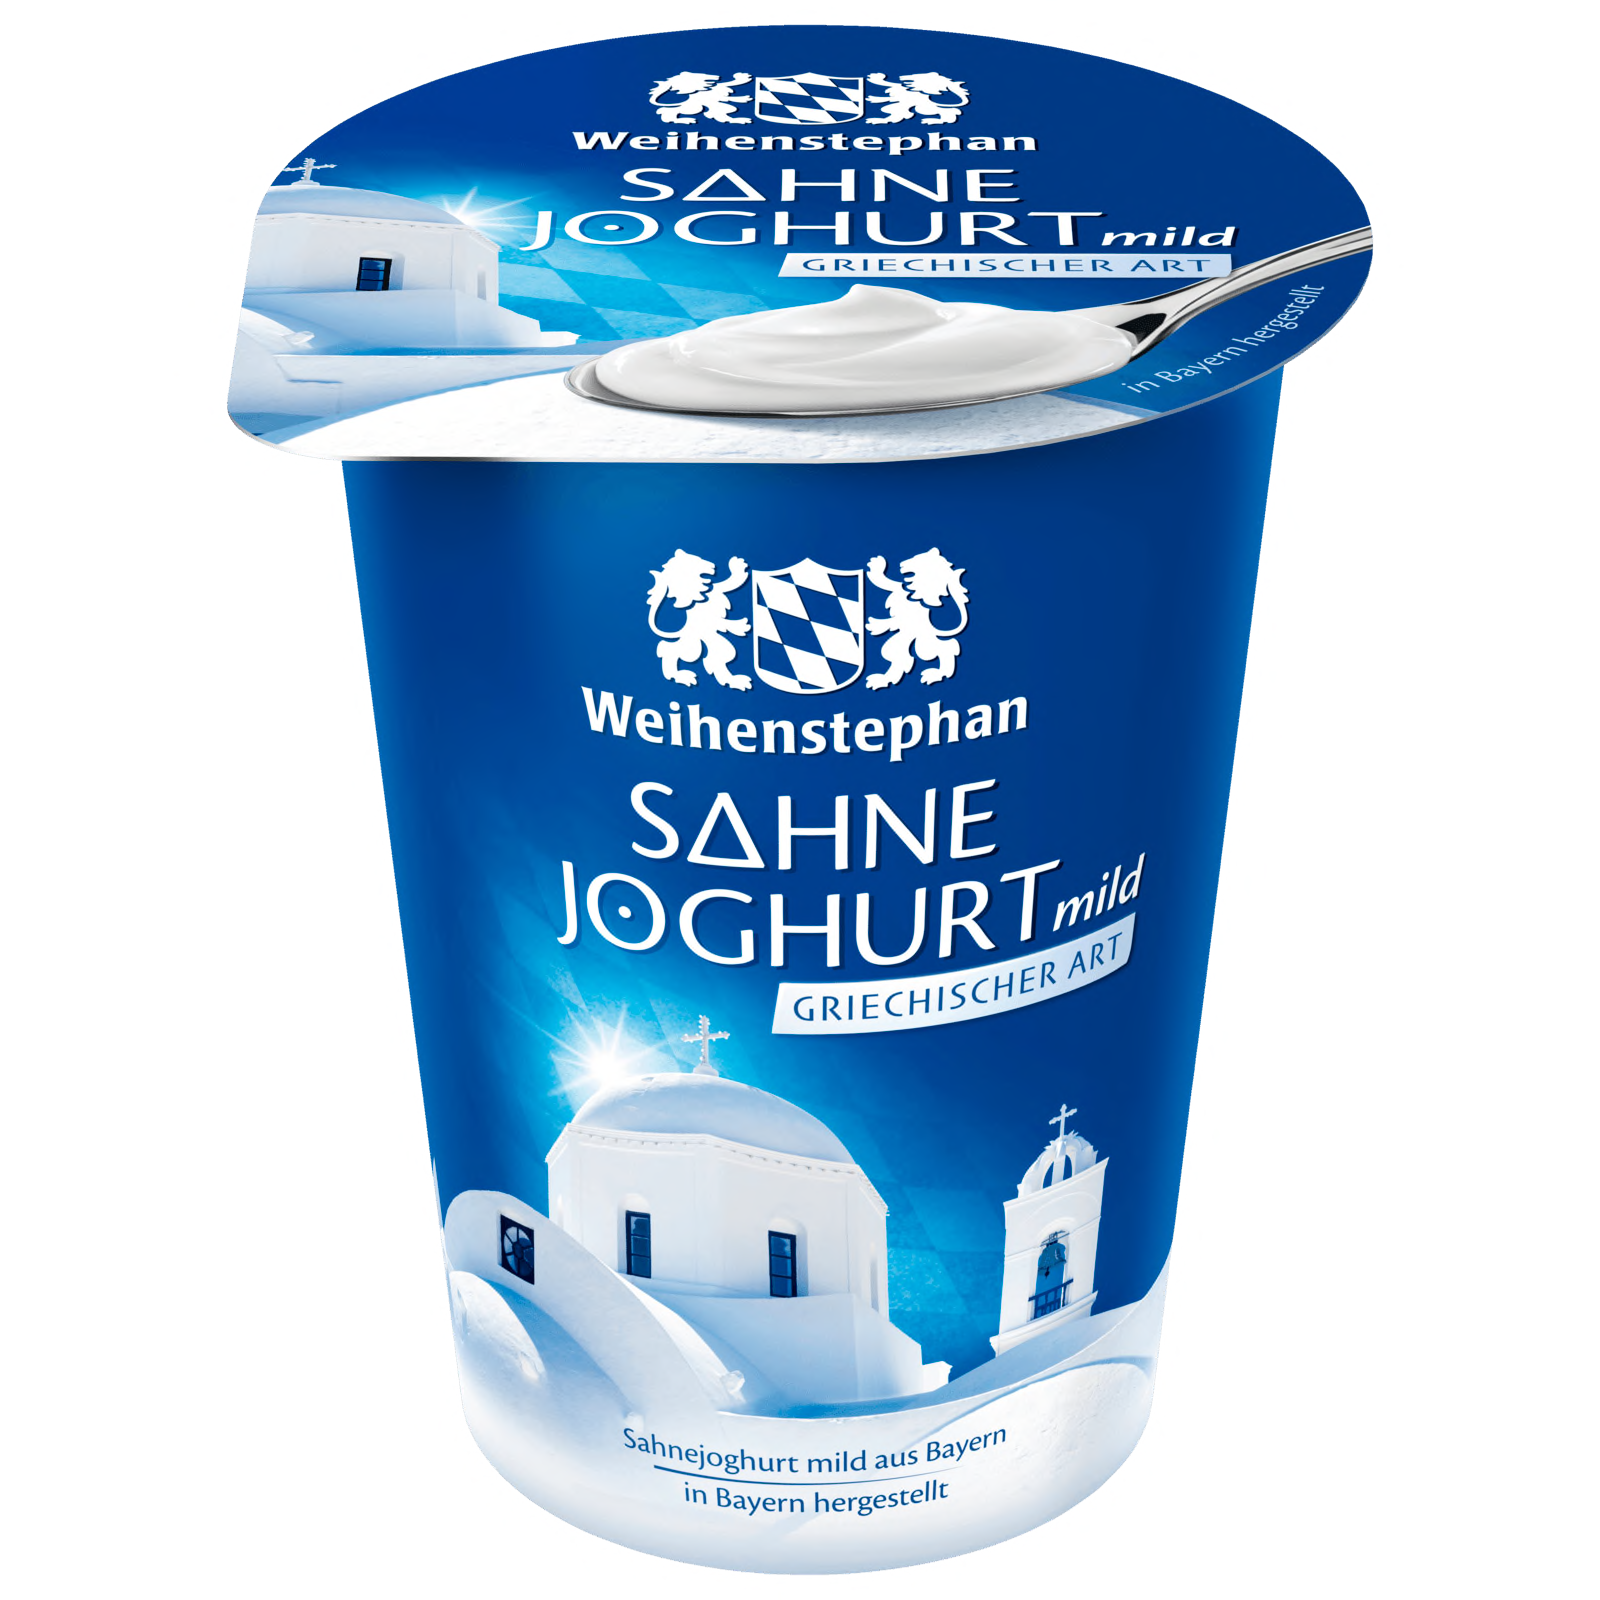 Weihenstephan Sahnejoghurt mild Griechischer Art 500g  für 1.69 EUR